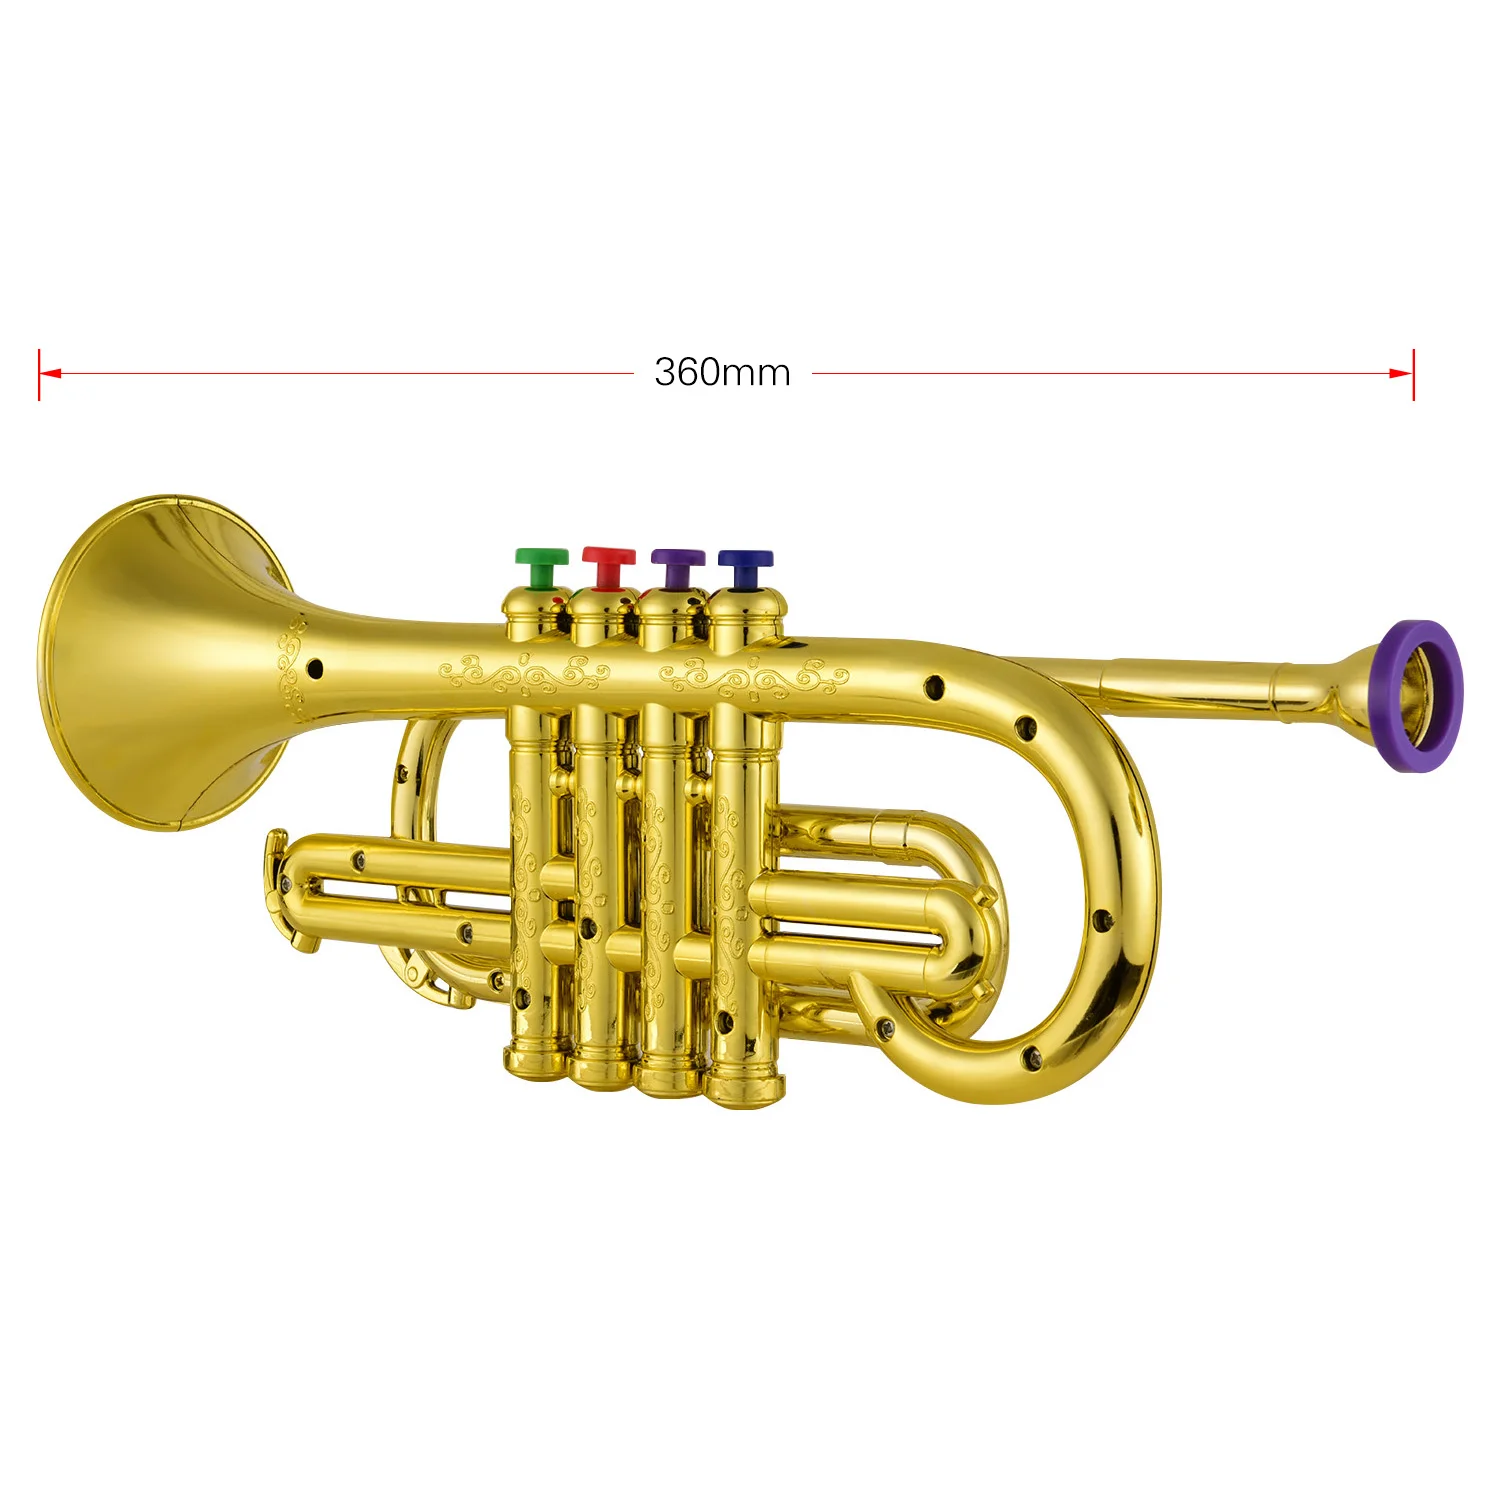 Trompete Gold Entertainer Kinder Spielzeug Trumpet ABS Musikinstrument 